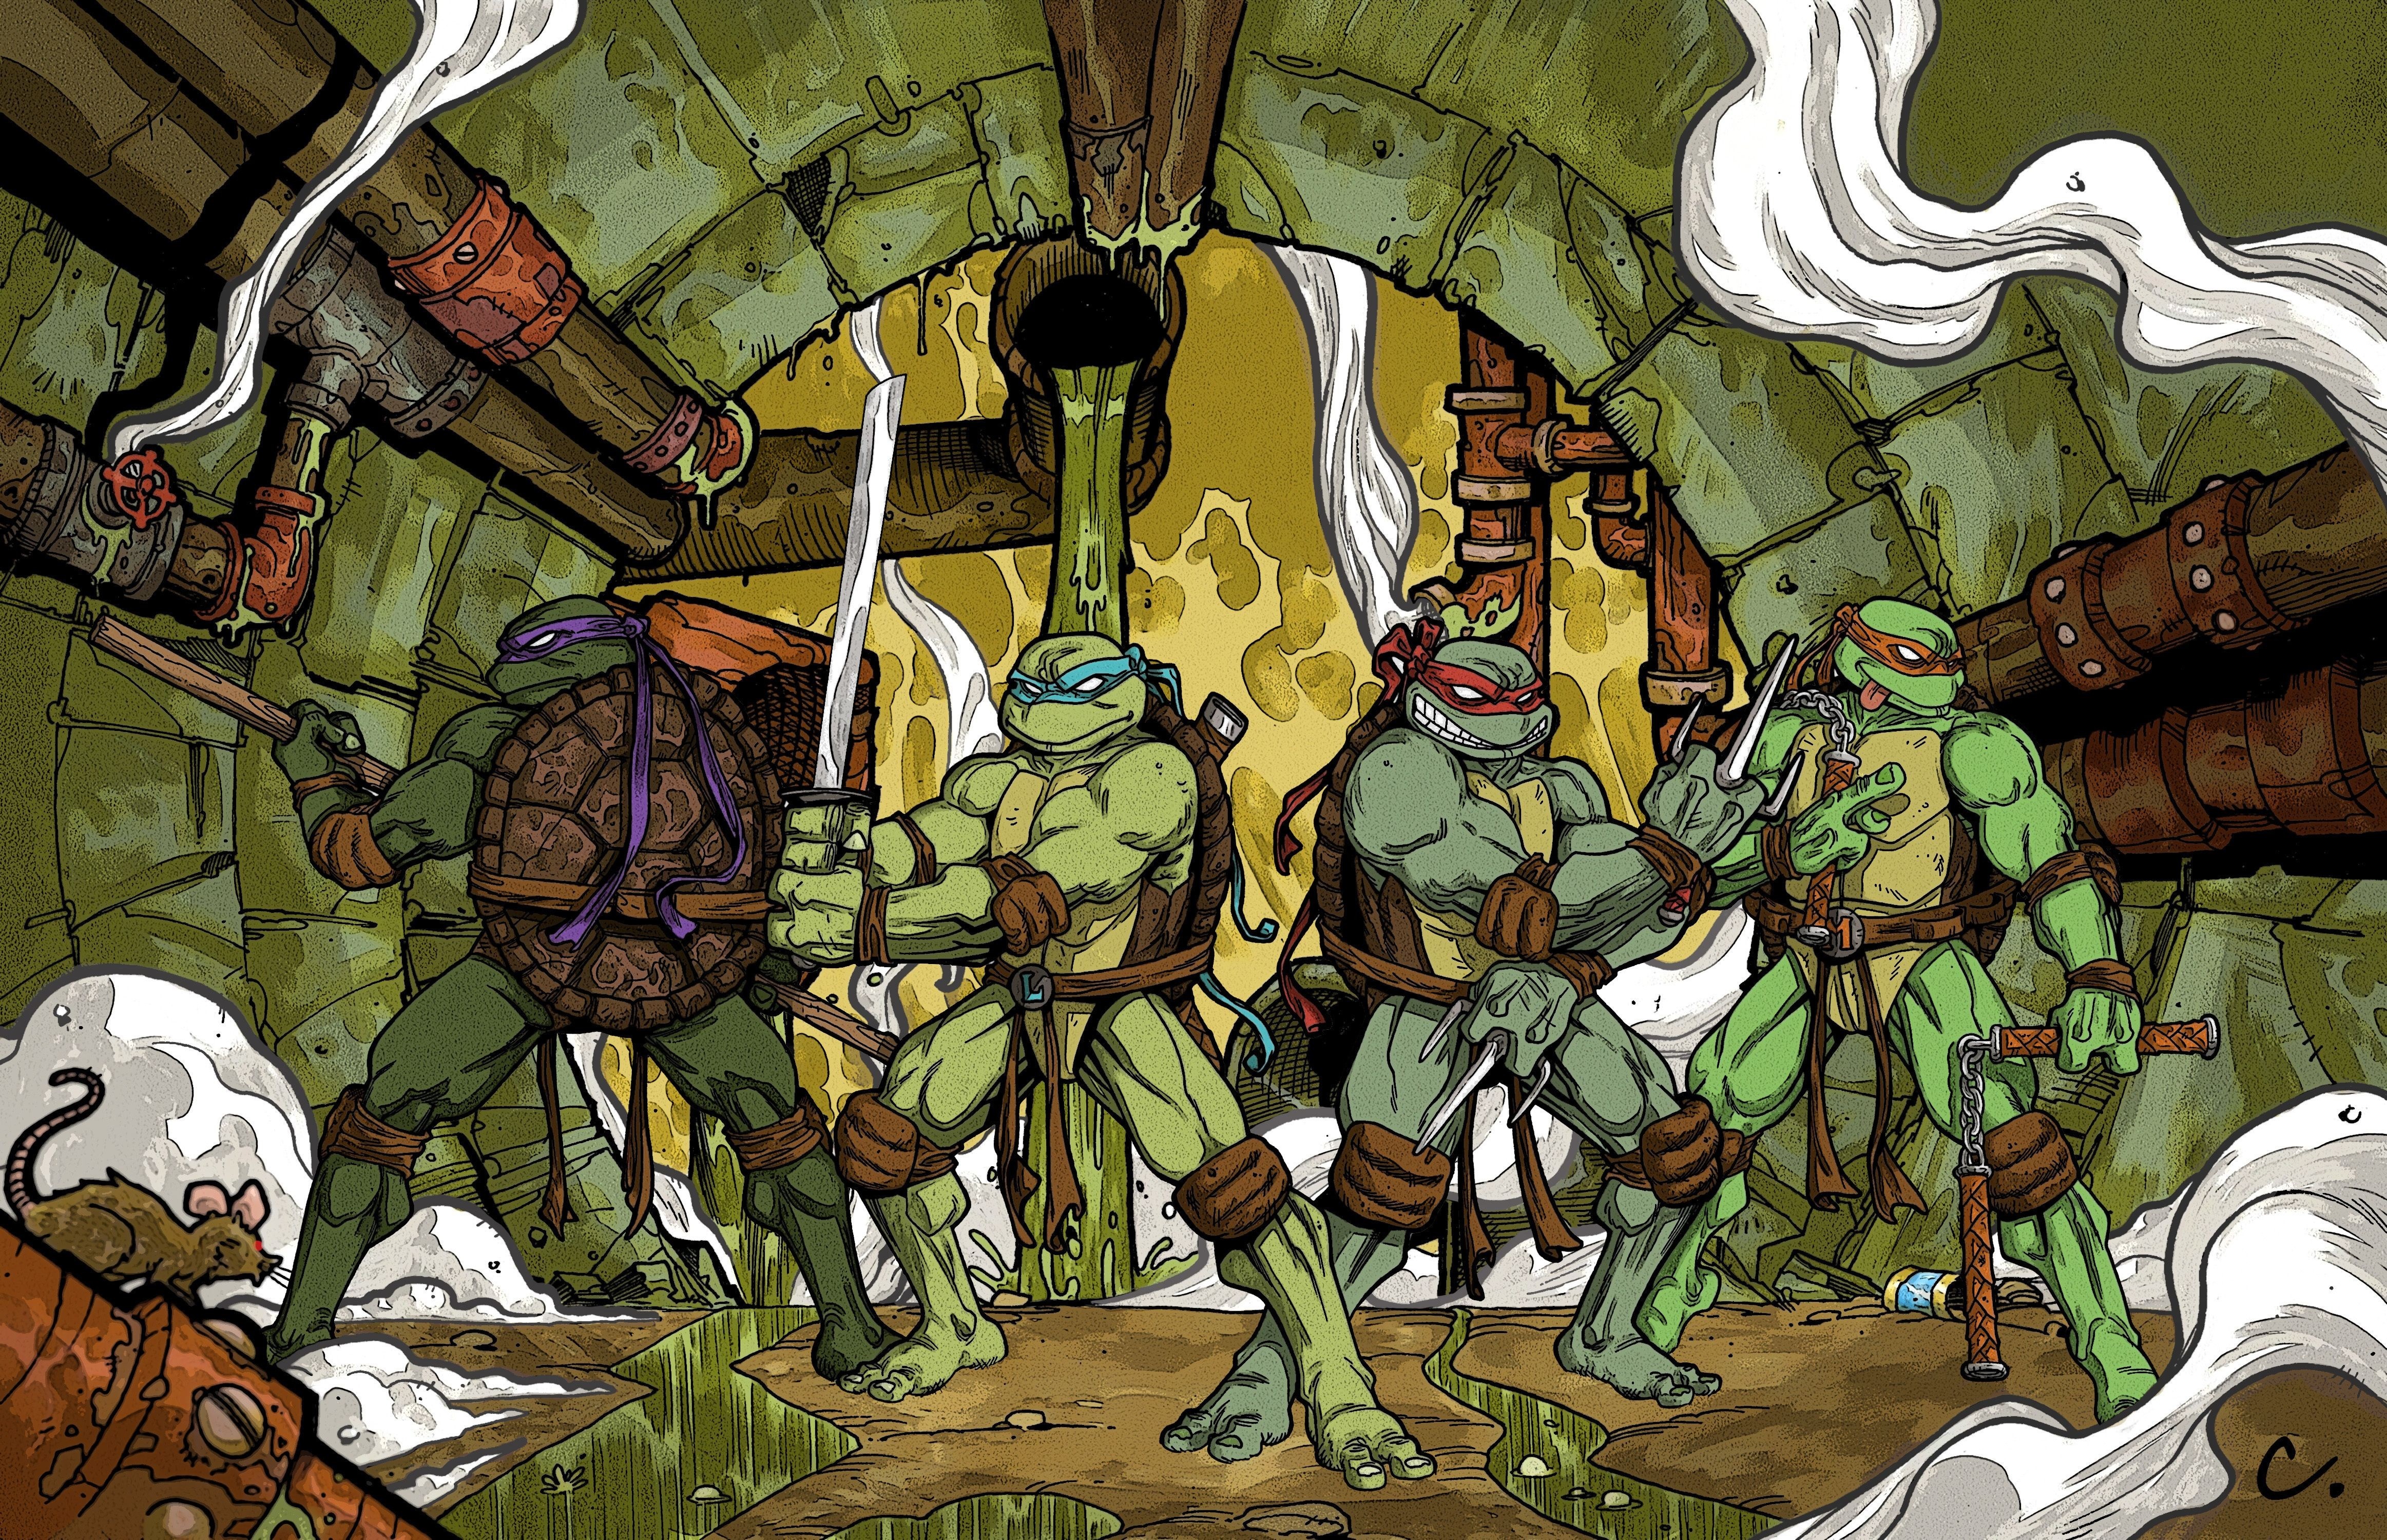 Cartoon warrior ics mythology teenage mutant ninja turtles screenshot ancient history middle ages